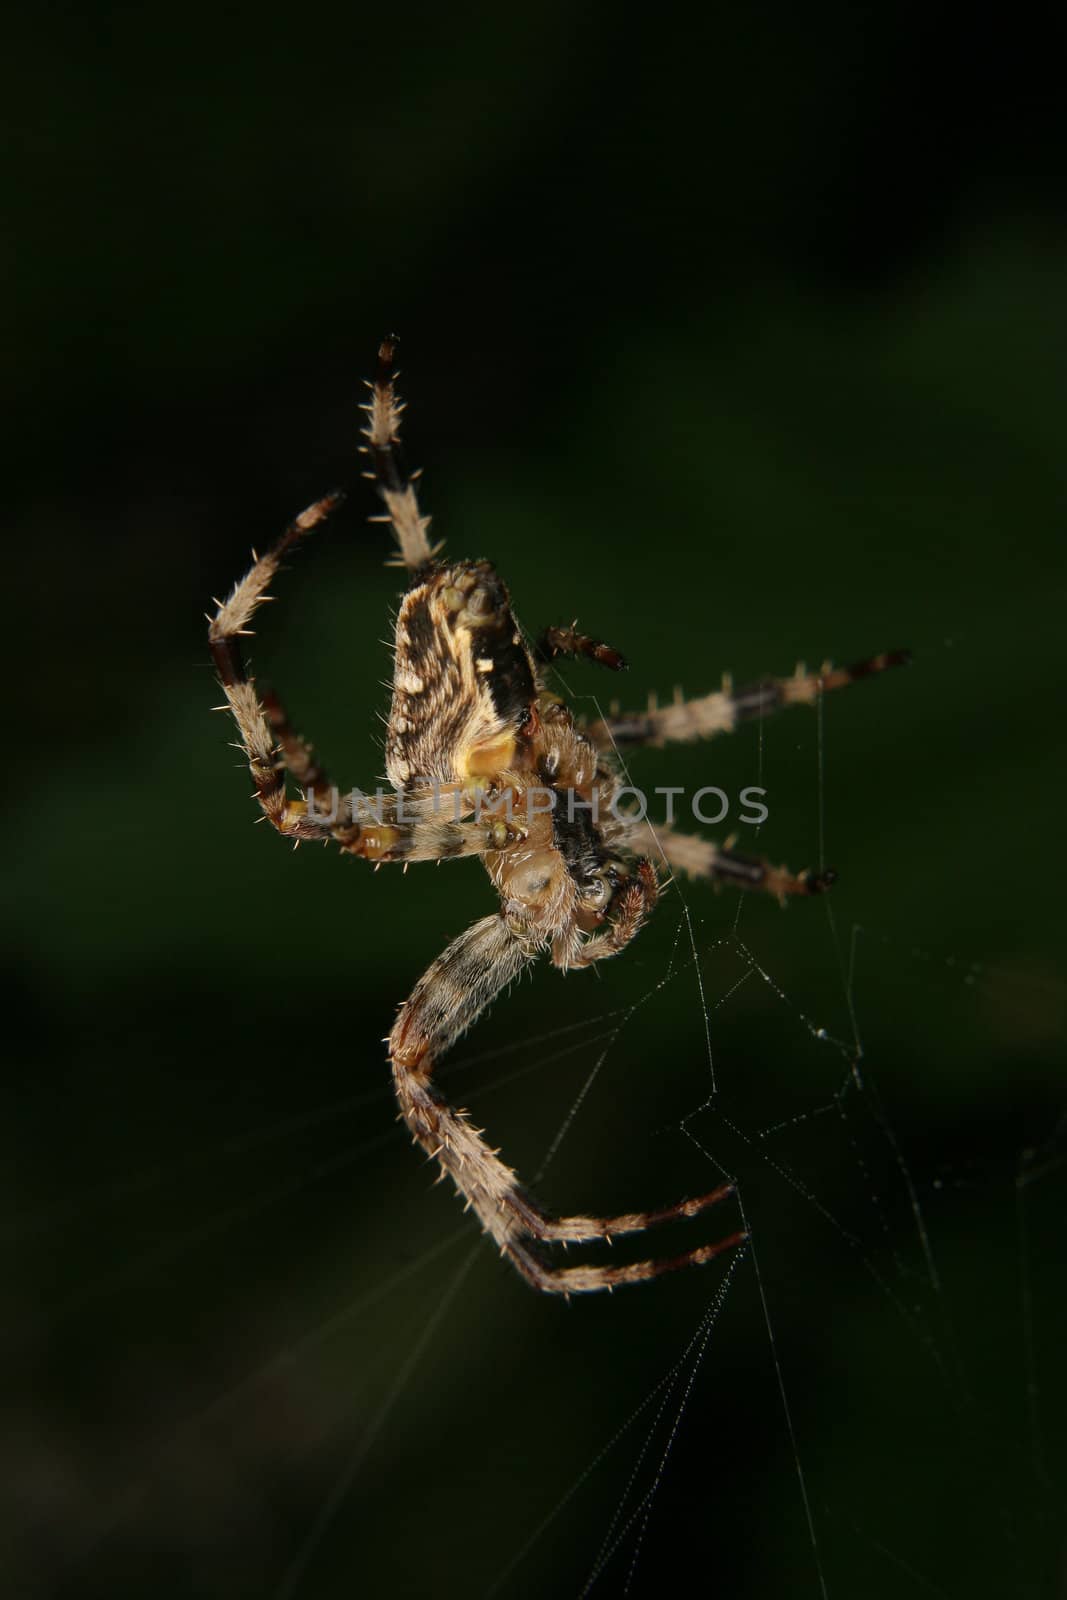 European garden spider (Araneus diadematus) by tdietrich